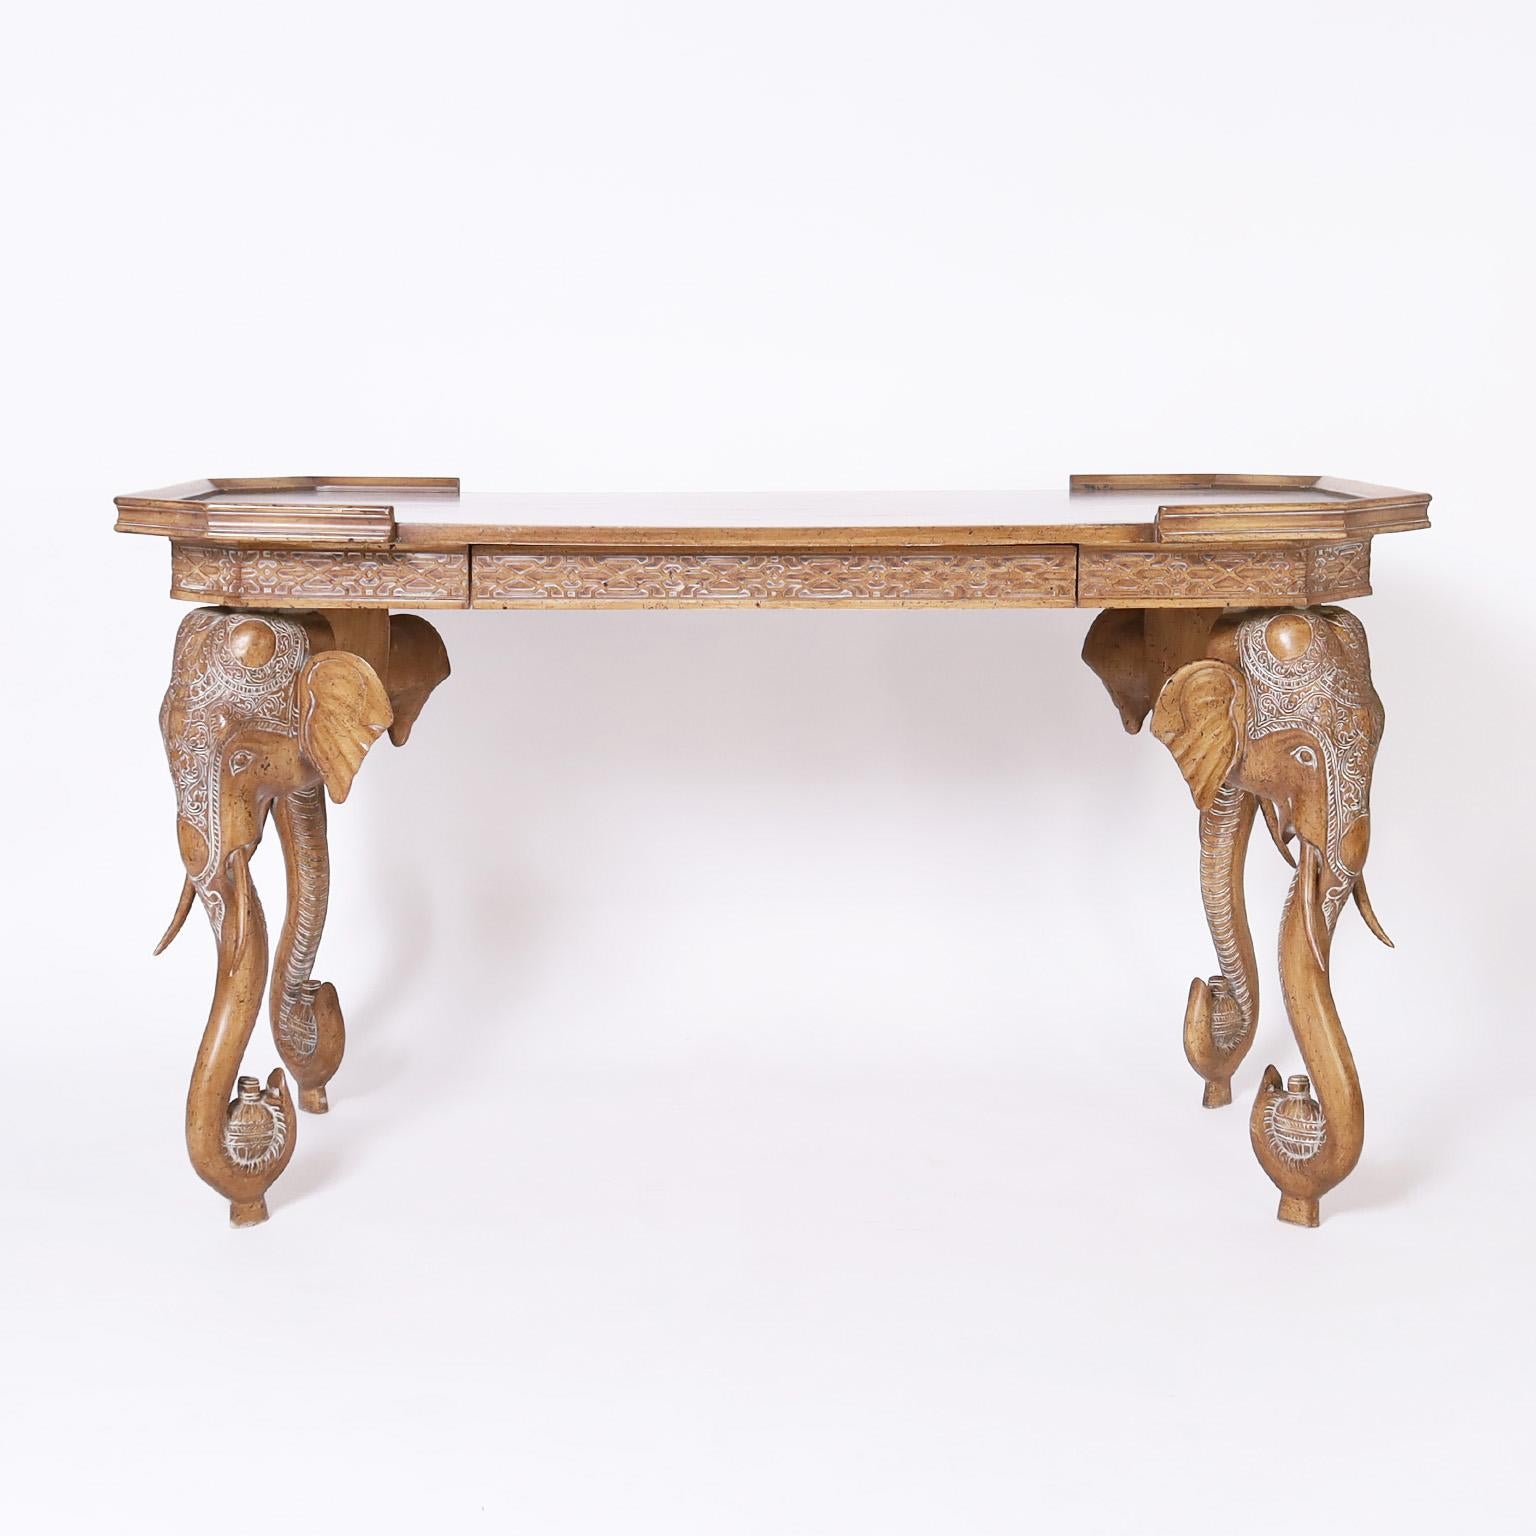 Bureau ou table de style colonial britannique à un tiroir, fabriqué en noyer avec une finition pécan chic au vieillissement contourné et doté de quatre pieds sculptés en tête d'éléphant avec un motif inspiré de l'Inde.